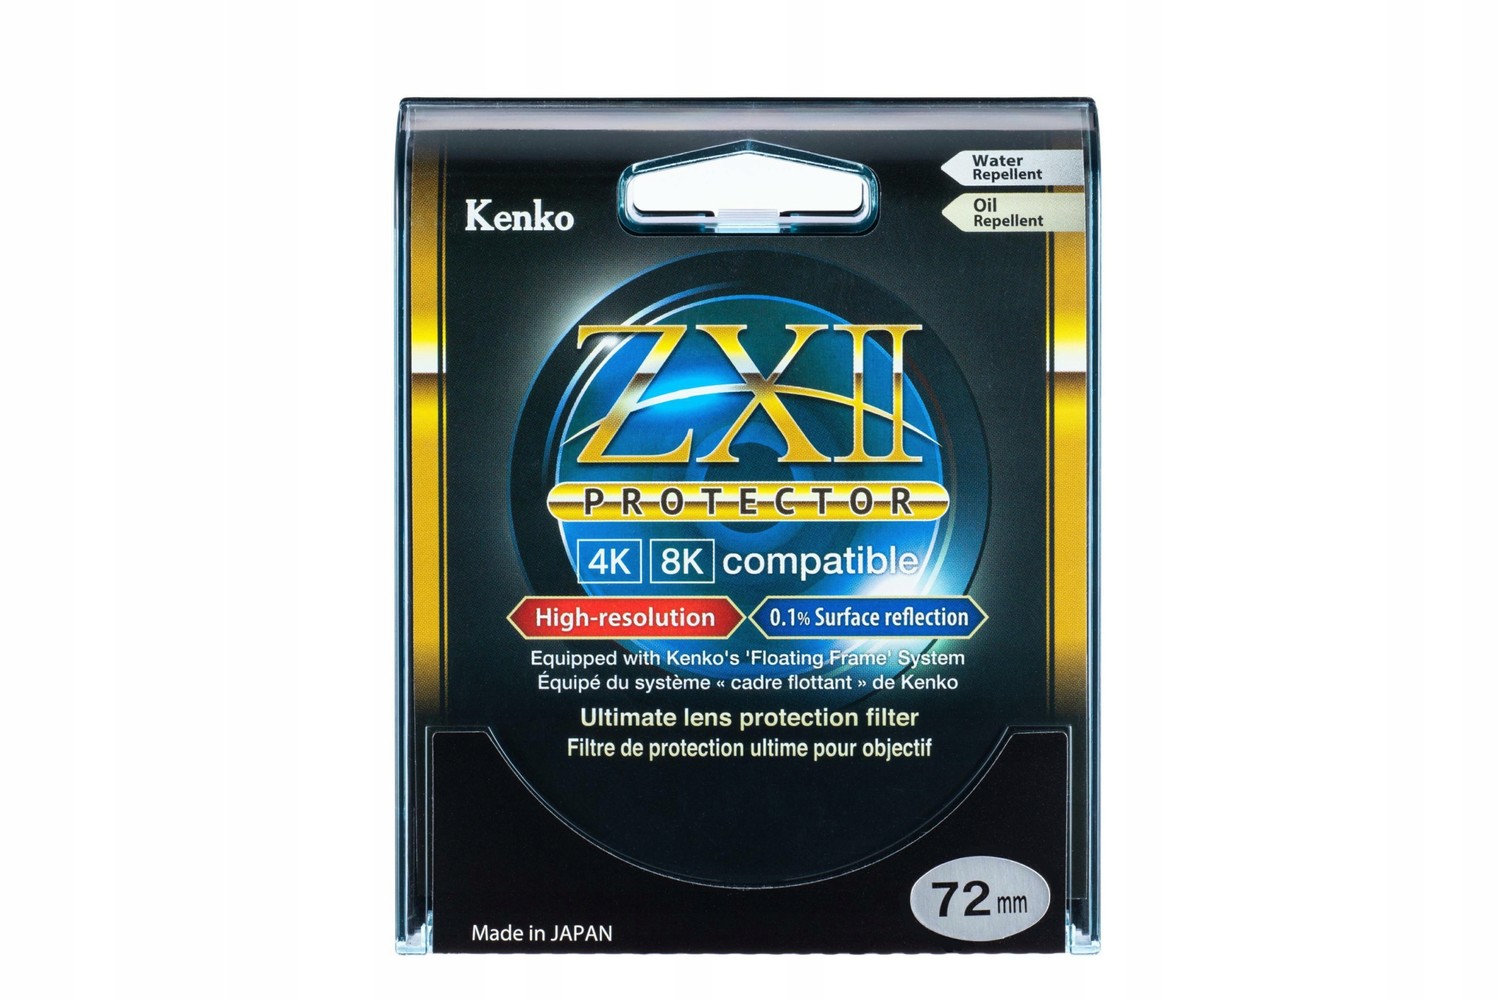 Chránič filtru Kenko Zx II 62mm